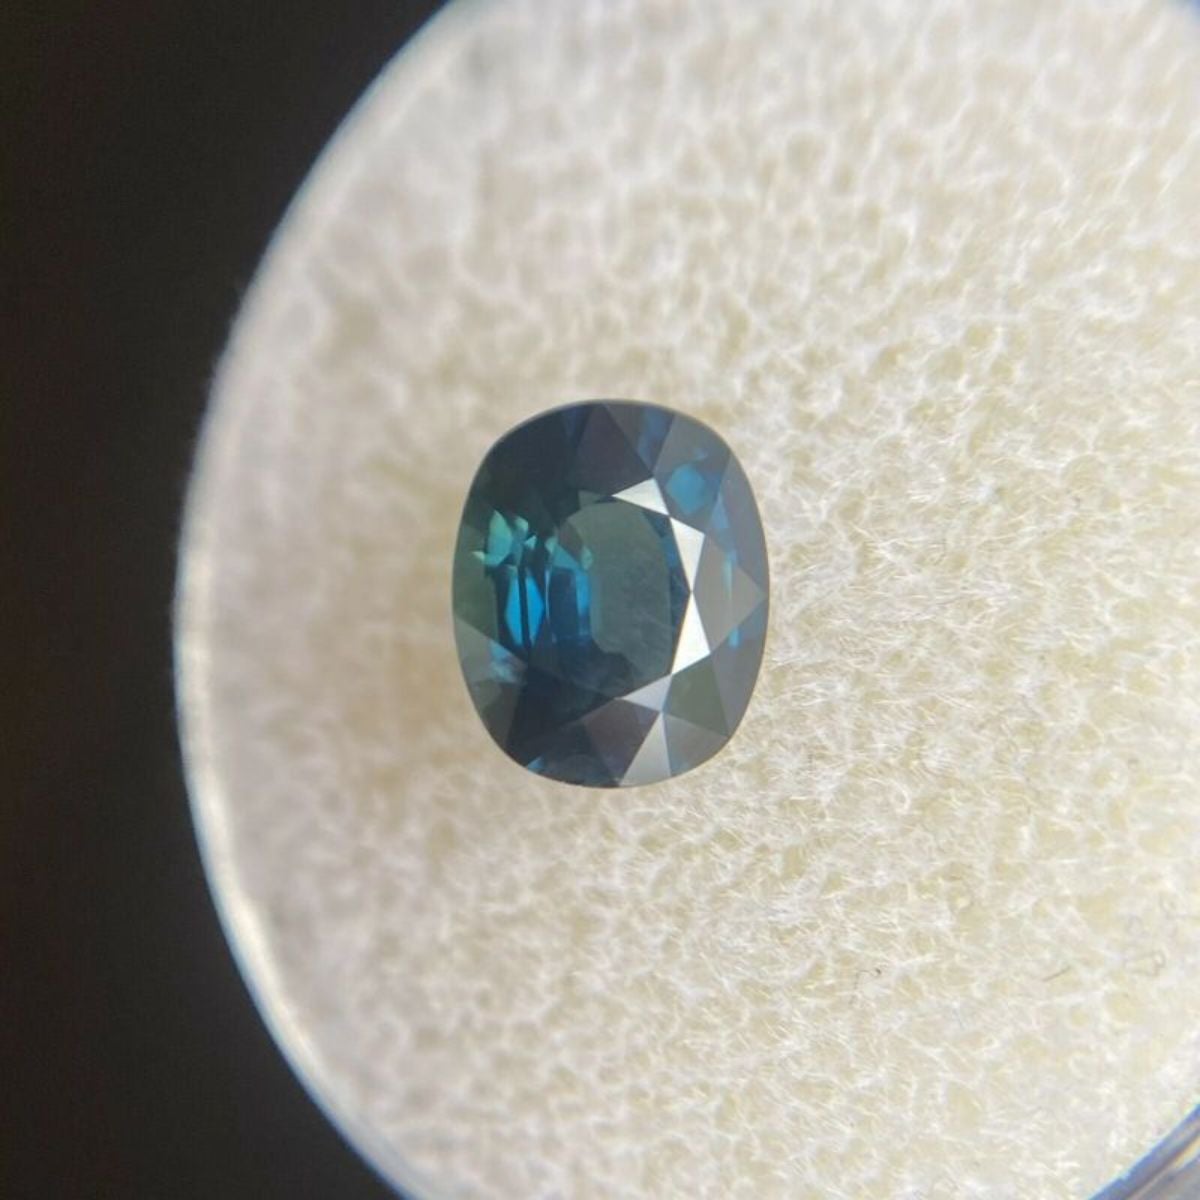 Fine pierre précieuse naturelle rare saphir bleu sarcelle profond taille coussin 1,55 ct